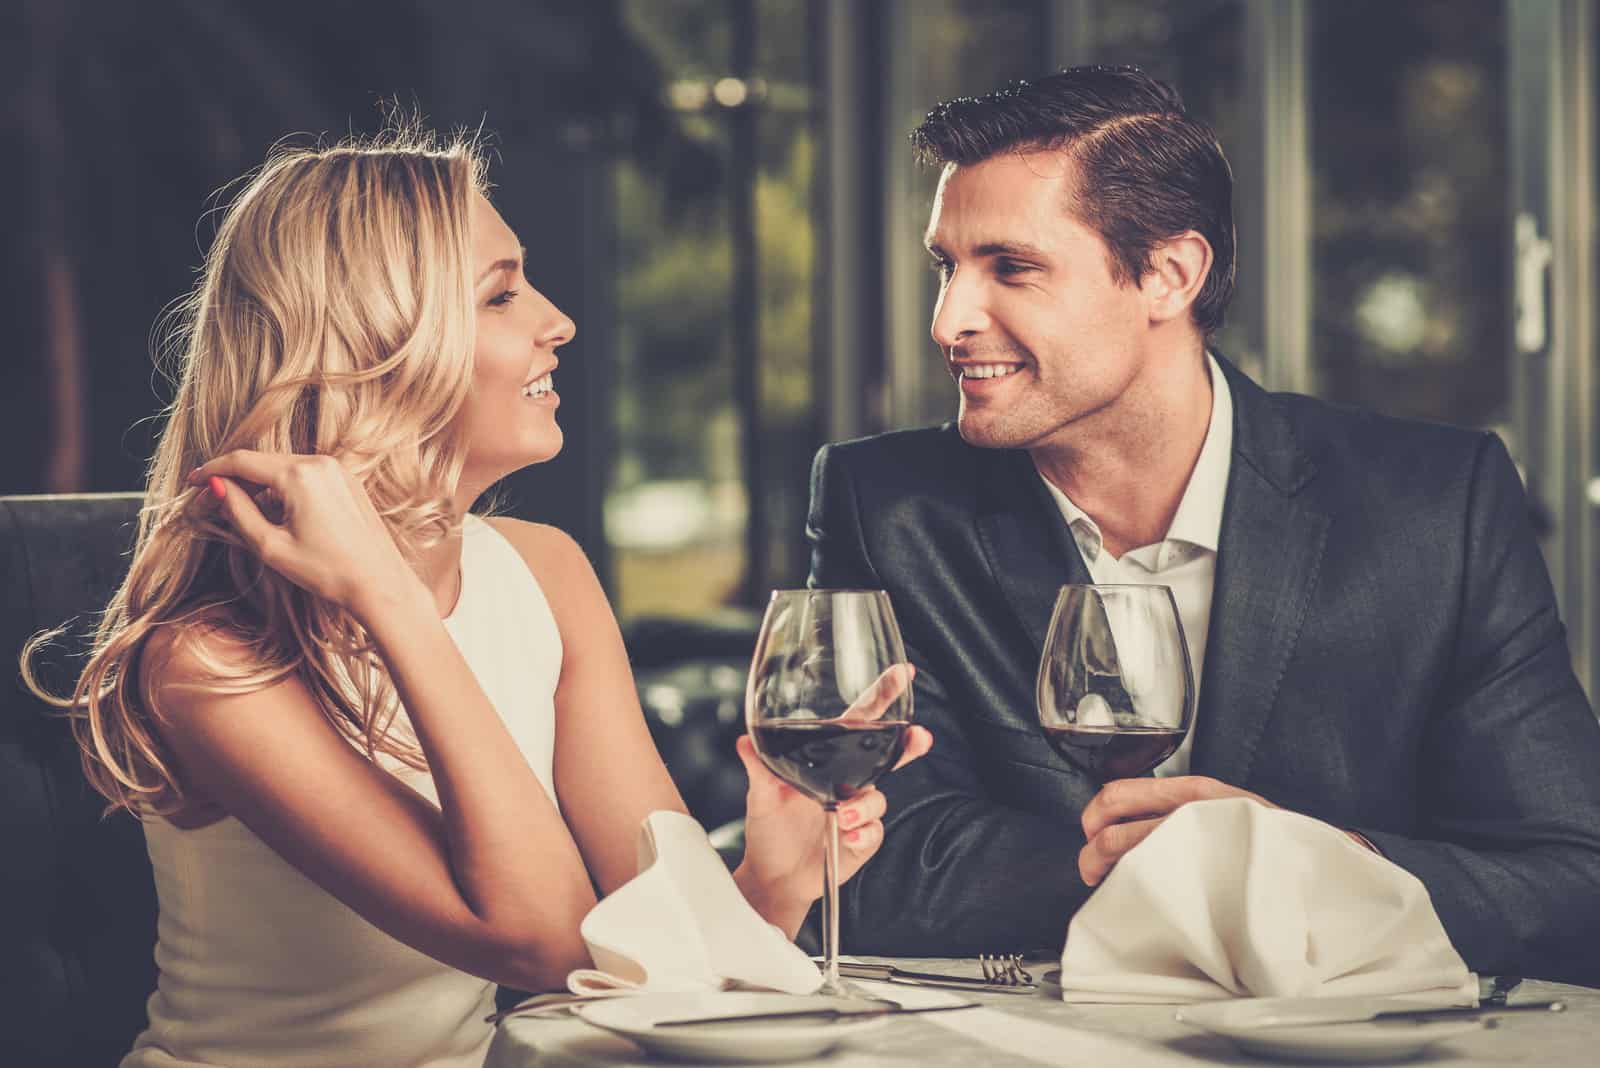 Cheerful couple dans un restaurant avec des verres de vin rouge